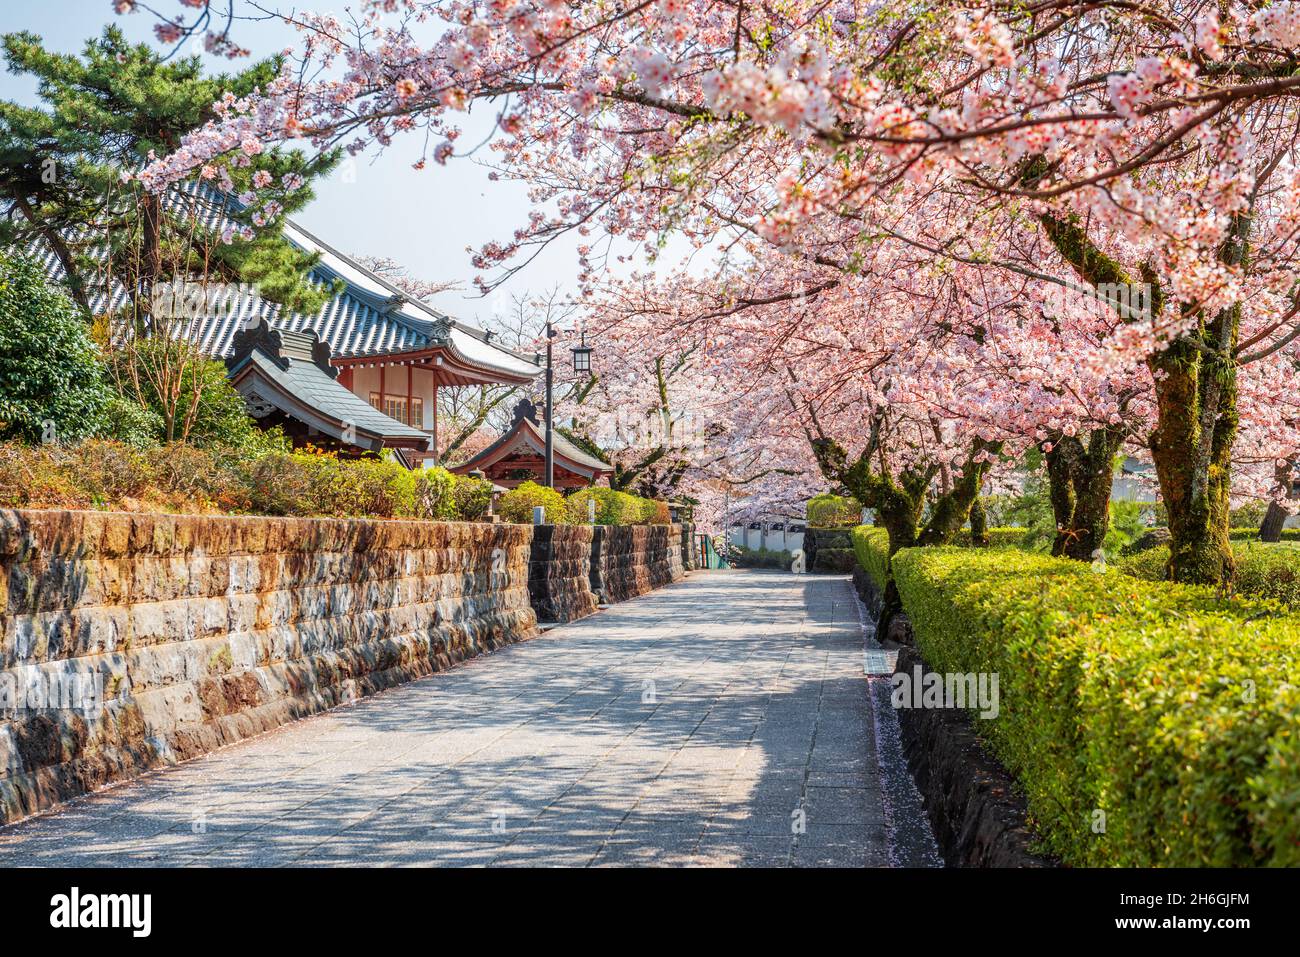 Shizuoka, le strade della città vecchia giapponese con fiori di ciliegio nella stagione primaverile. Foto Stock